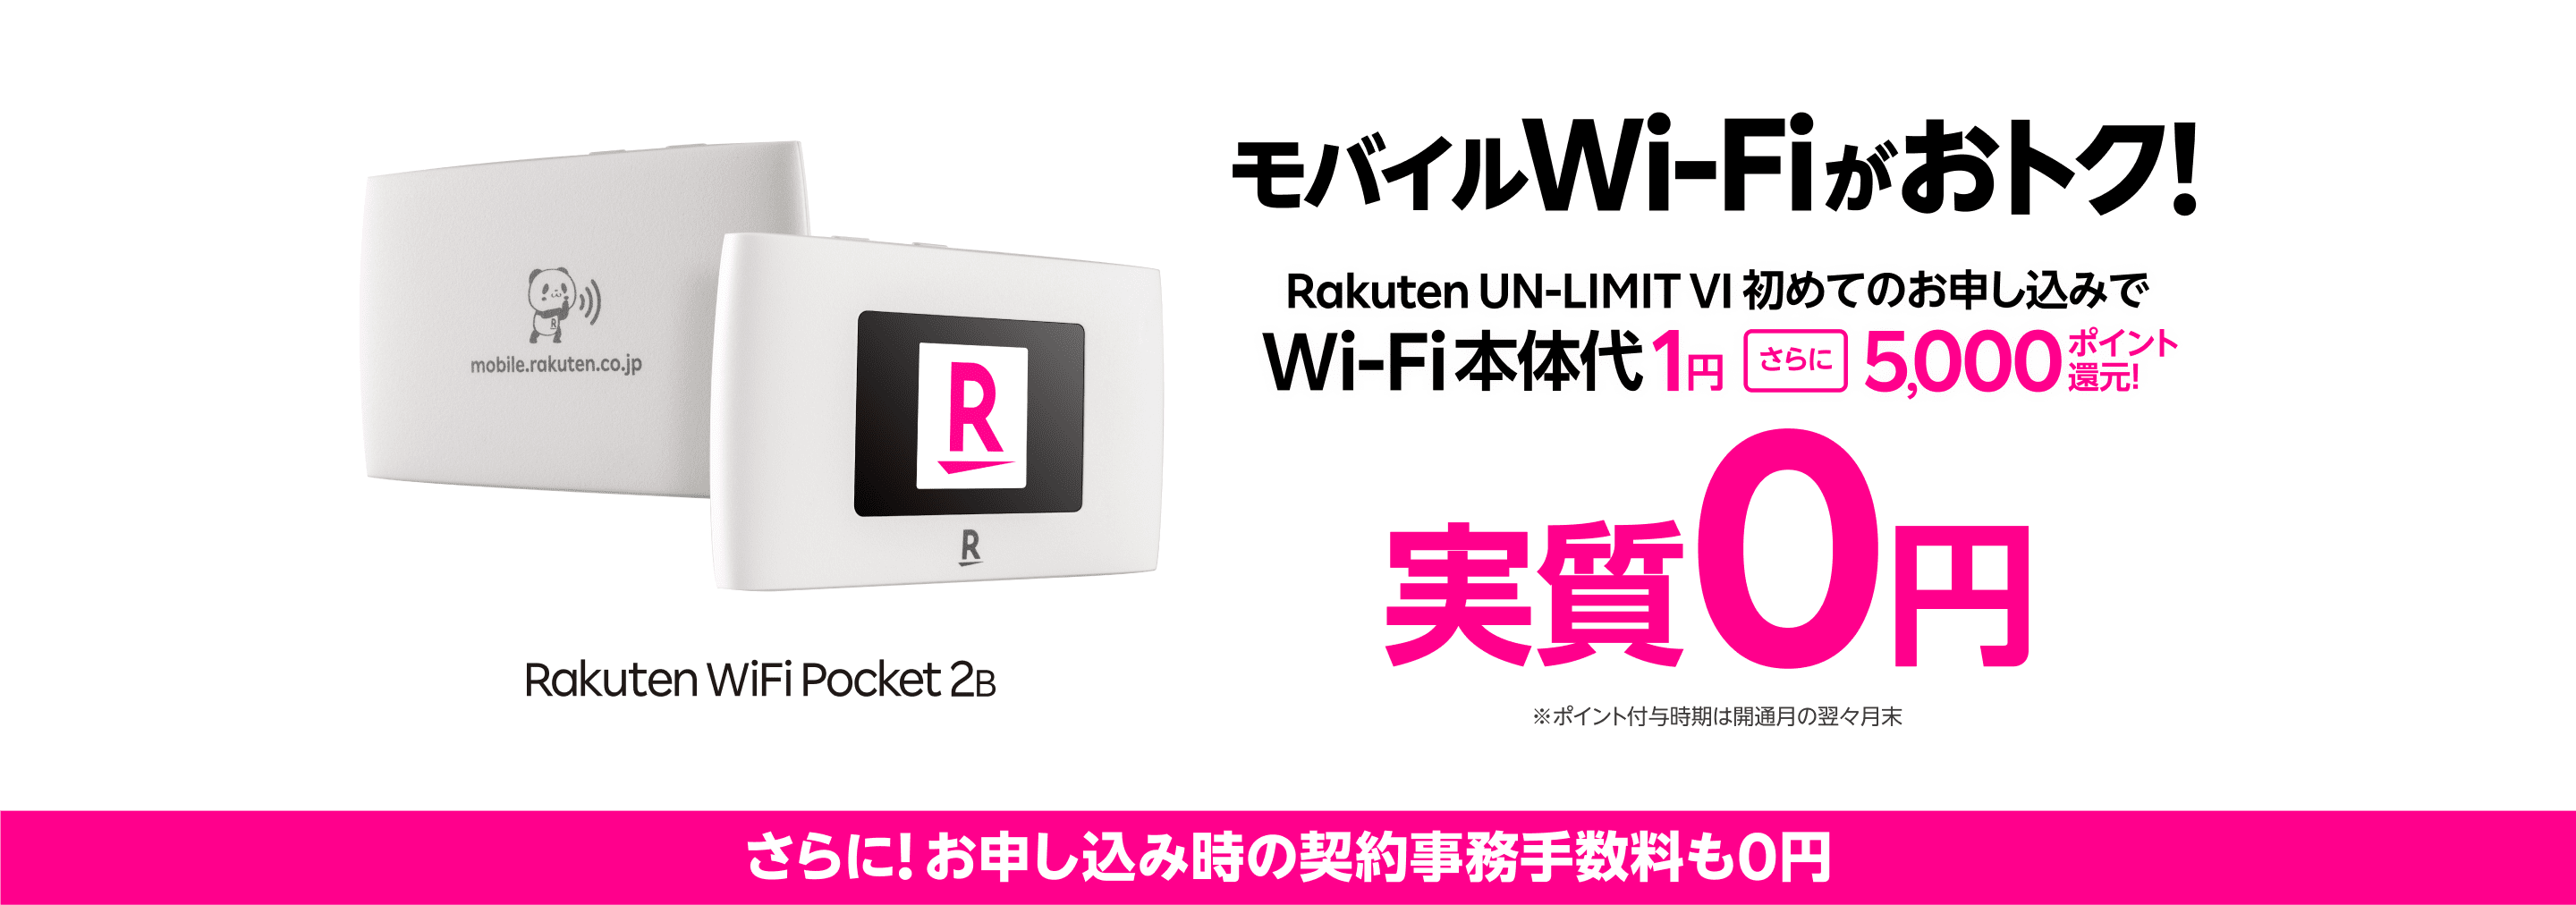 楽天モバイルのモバイルWi-Fi Rakuten WiFi Pocket 2B 